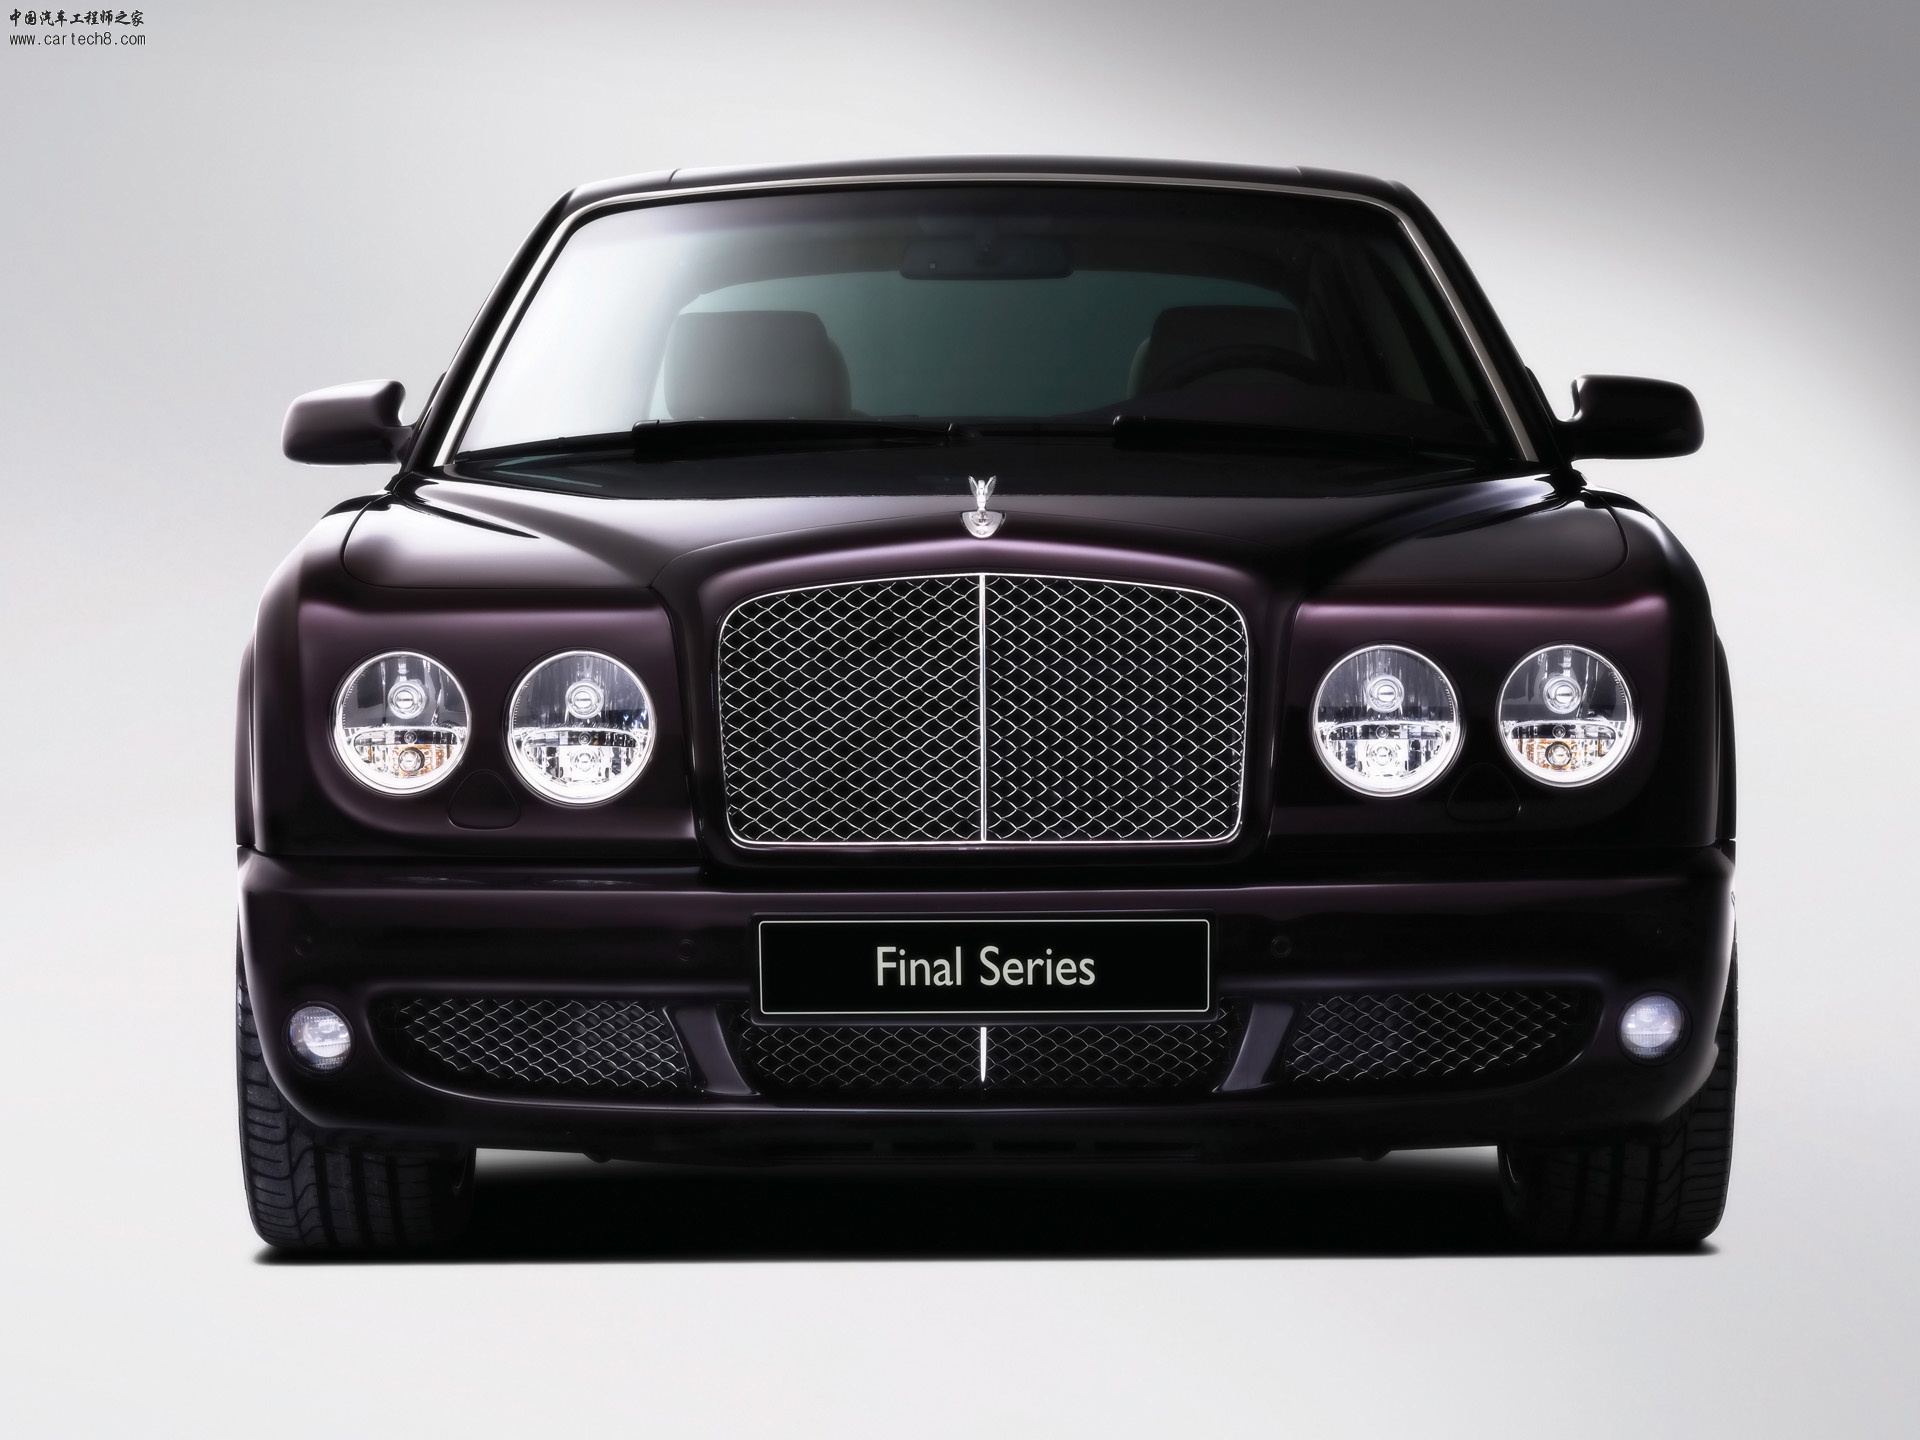 2009-Bentley-Arnage-Final-Series-Front-1920x1440.jpg